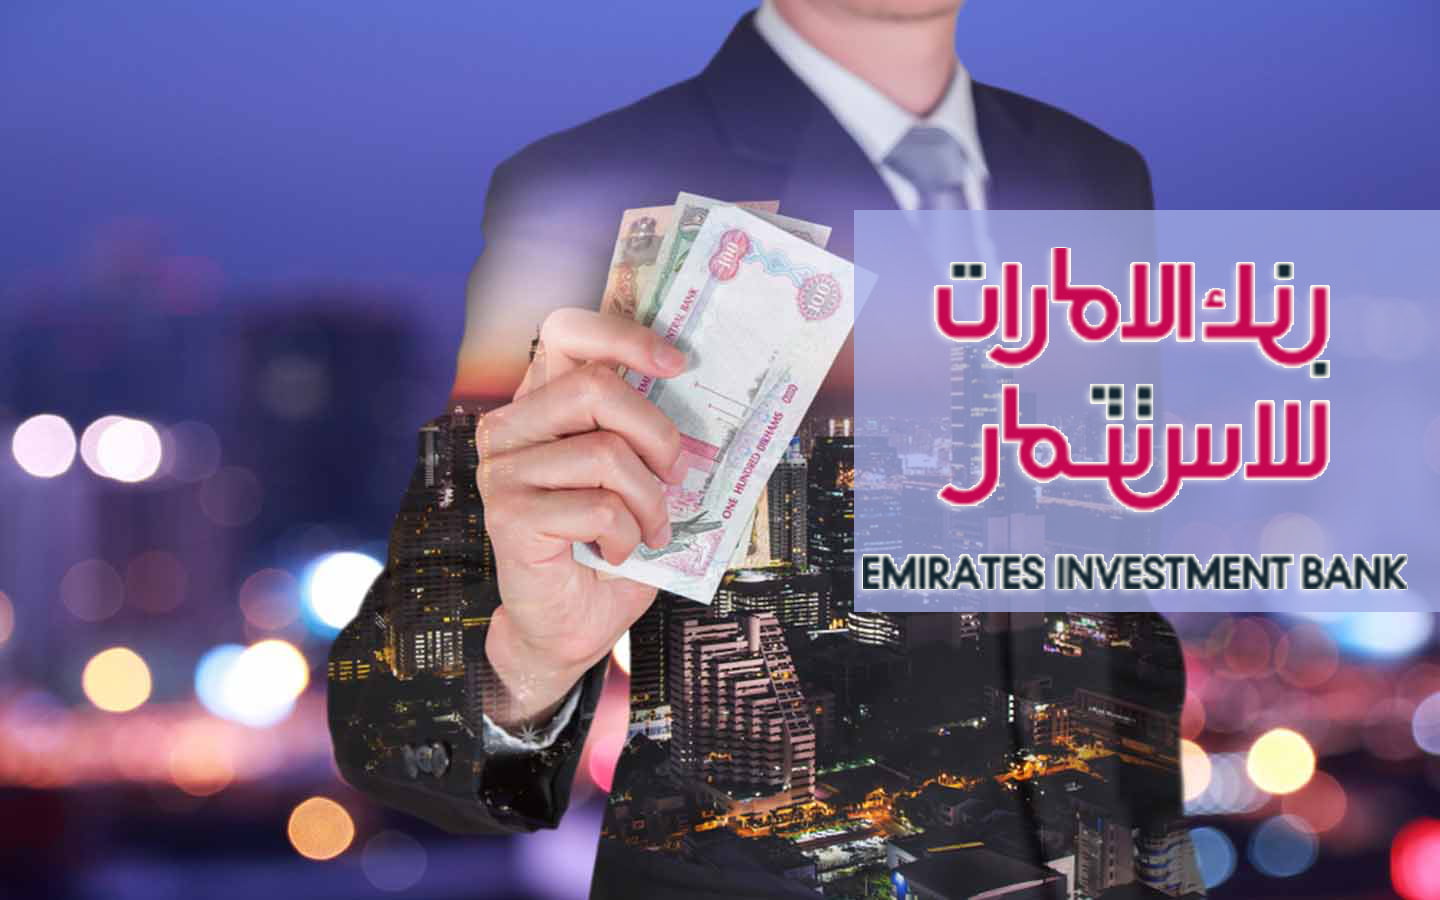 كيفية فتح حساب في بنك الإمارات العربية للاستثمار AIBANK بالخطوات